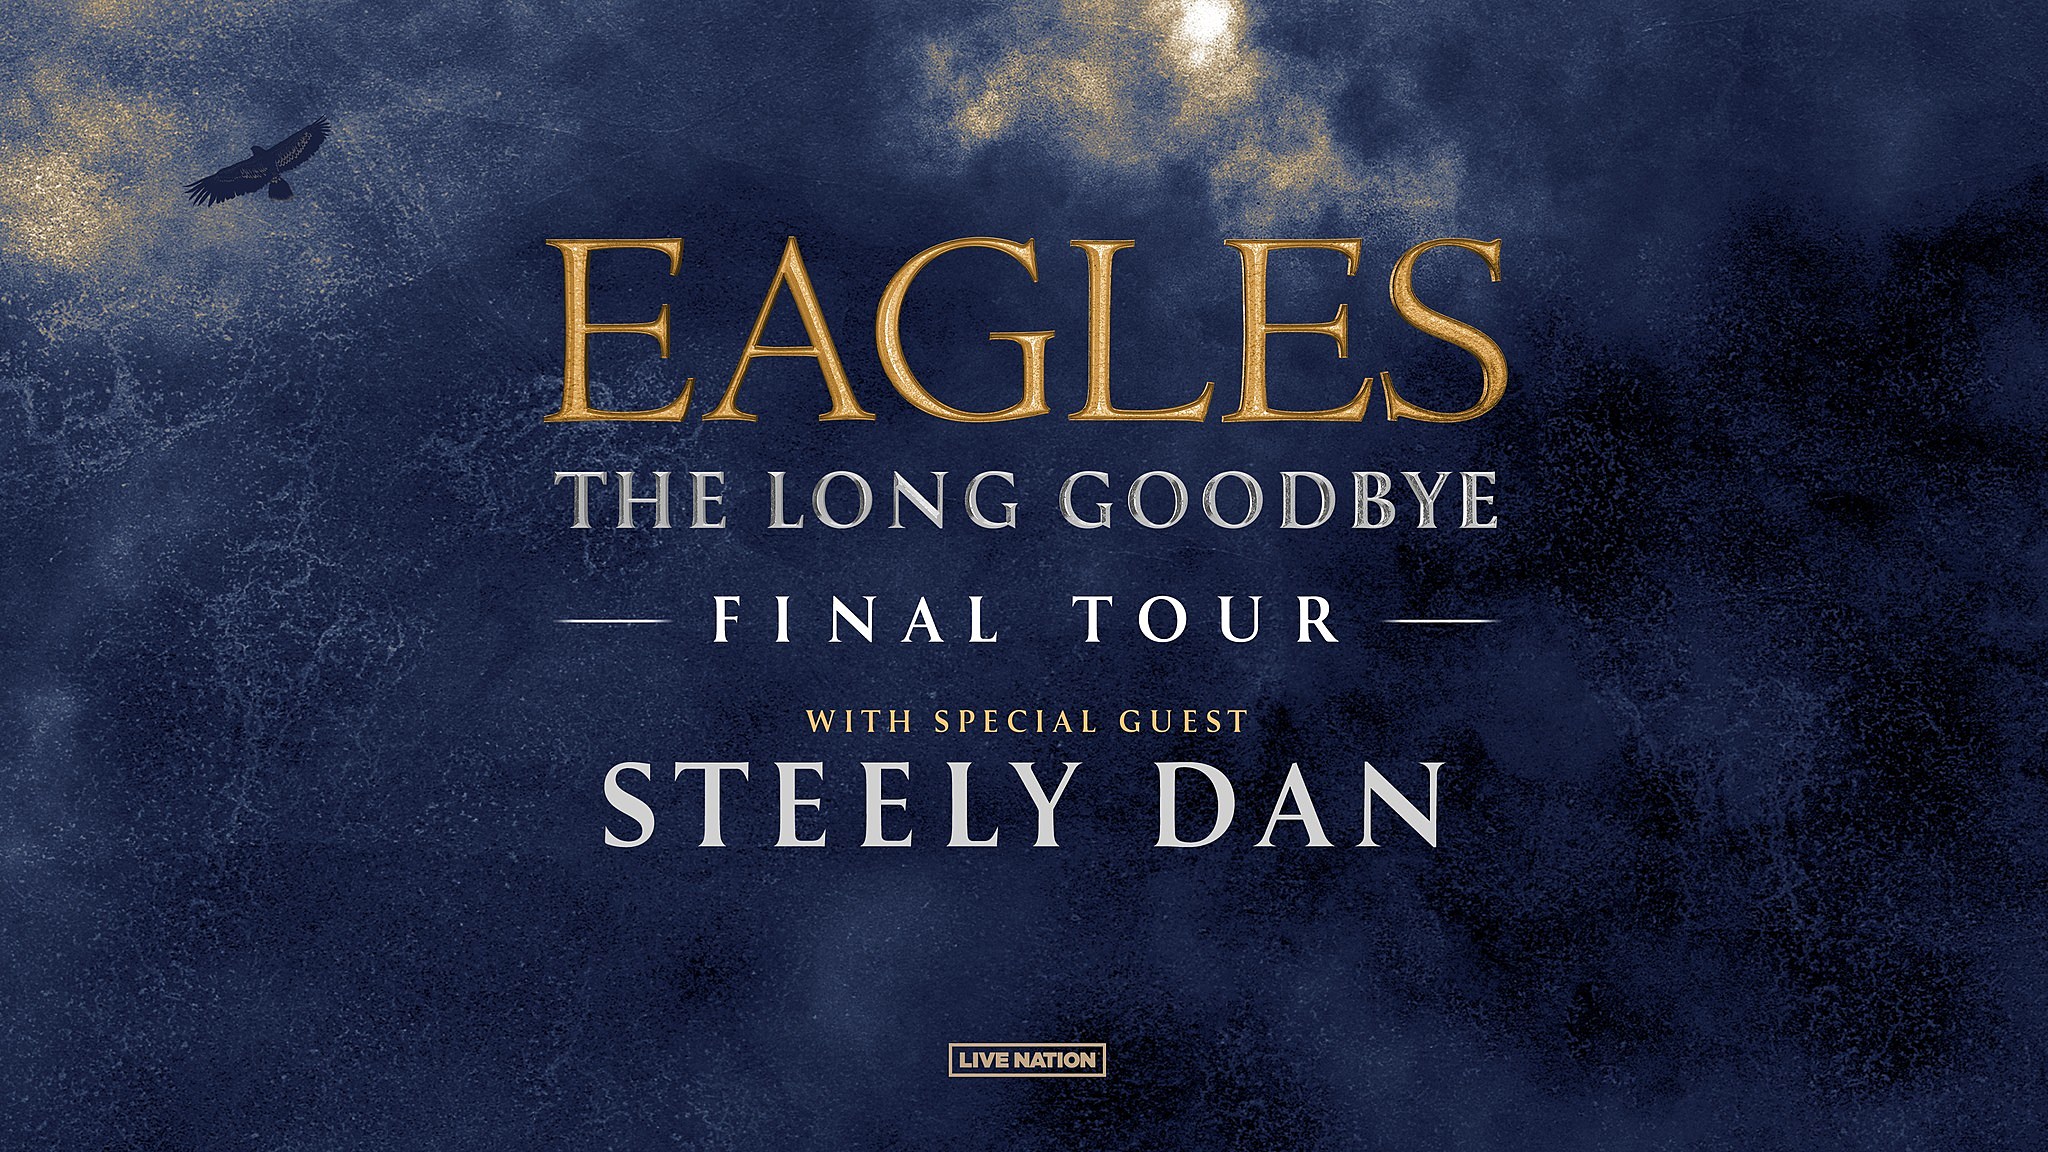 Steely Dan announce first tour dates since Walter Becker’s death